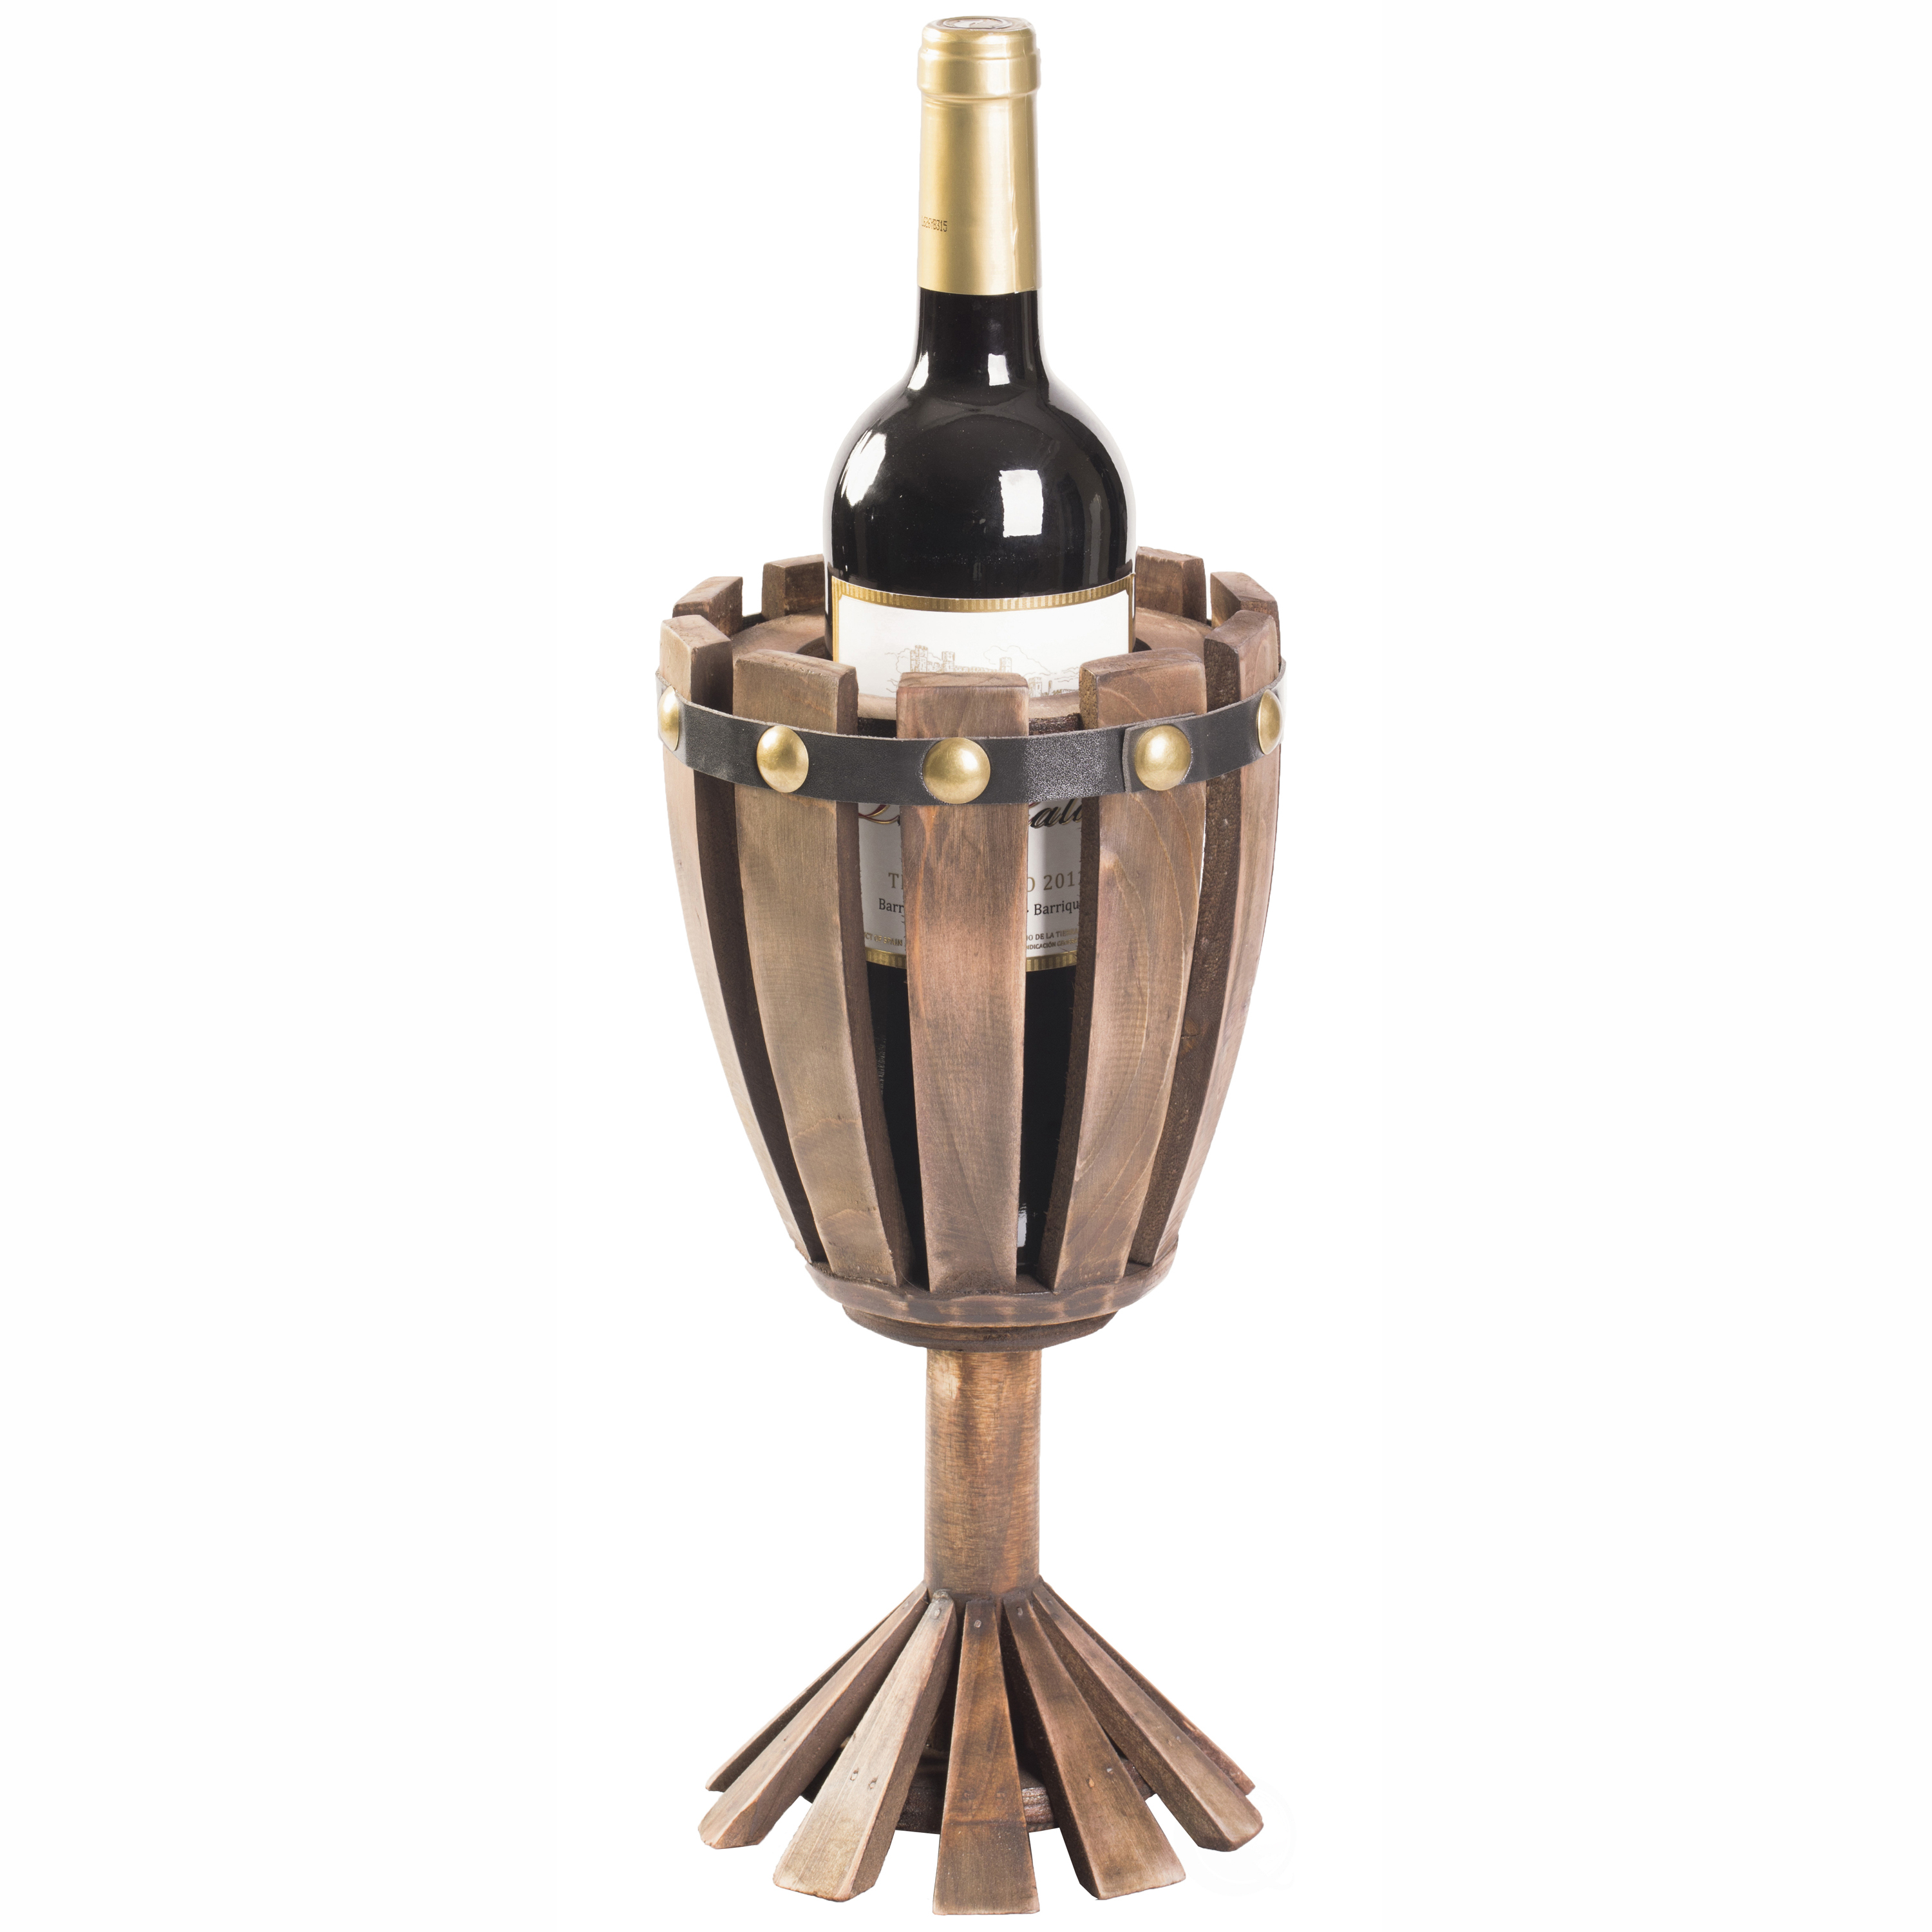 Wooden Wine Goblet Shaped Vintage Decorative Single Bottle Wine Holder